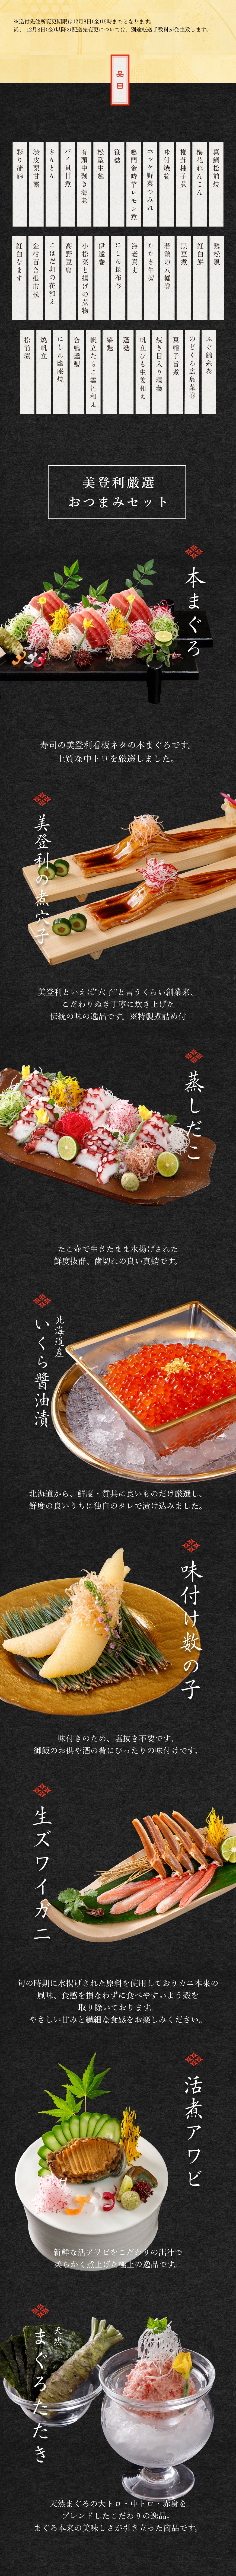 完売御礼祝膳おせちセット(税込・送料込) - 寿司の美登利 おせちショップ